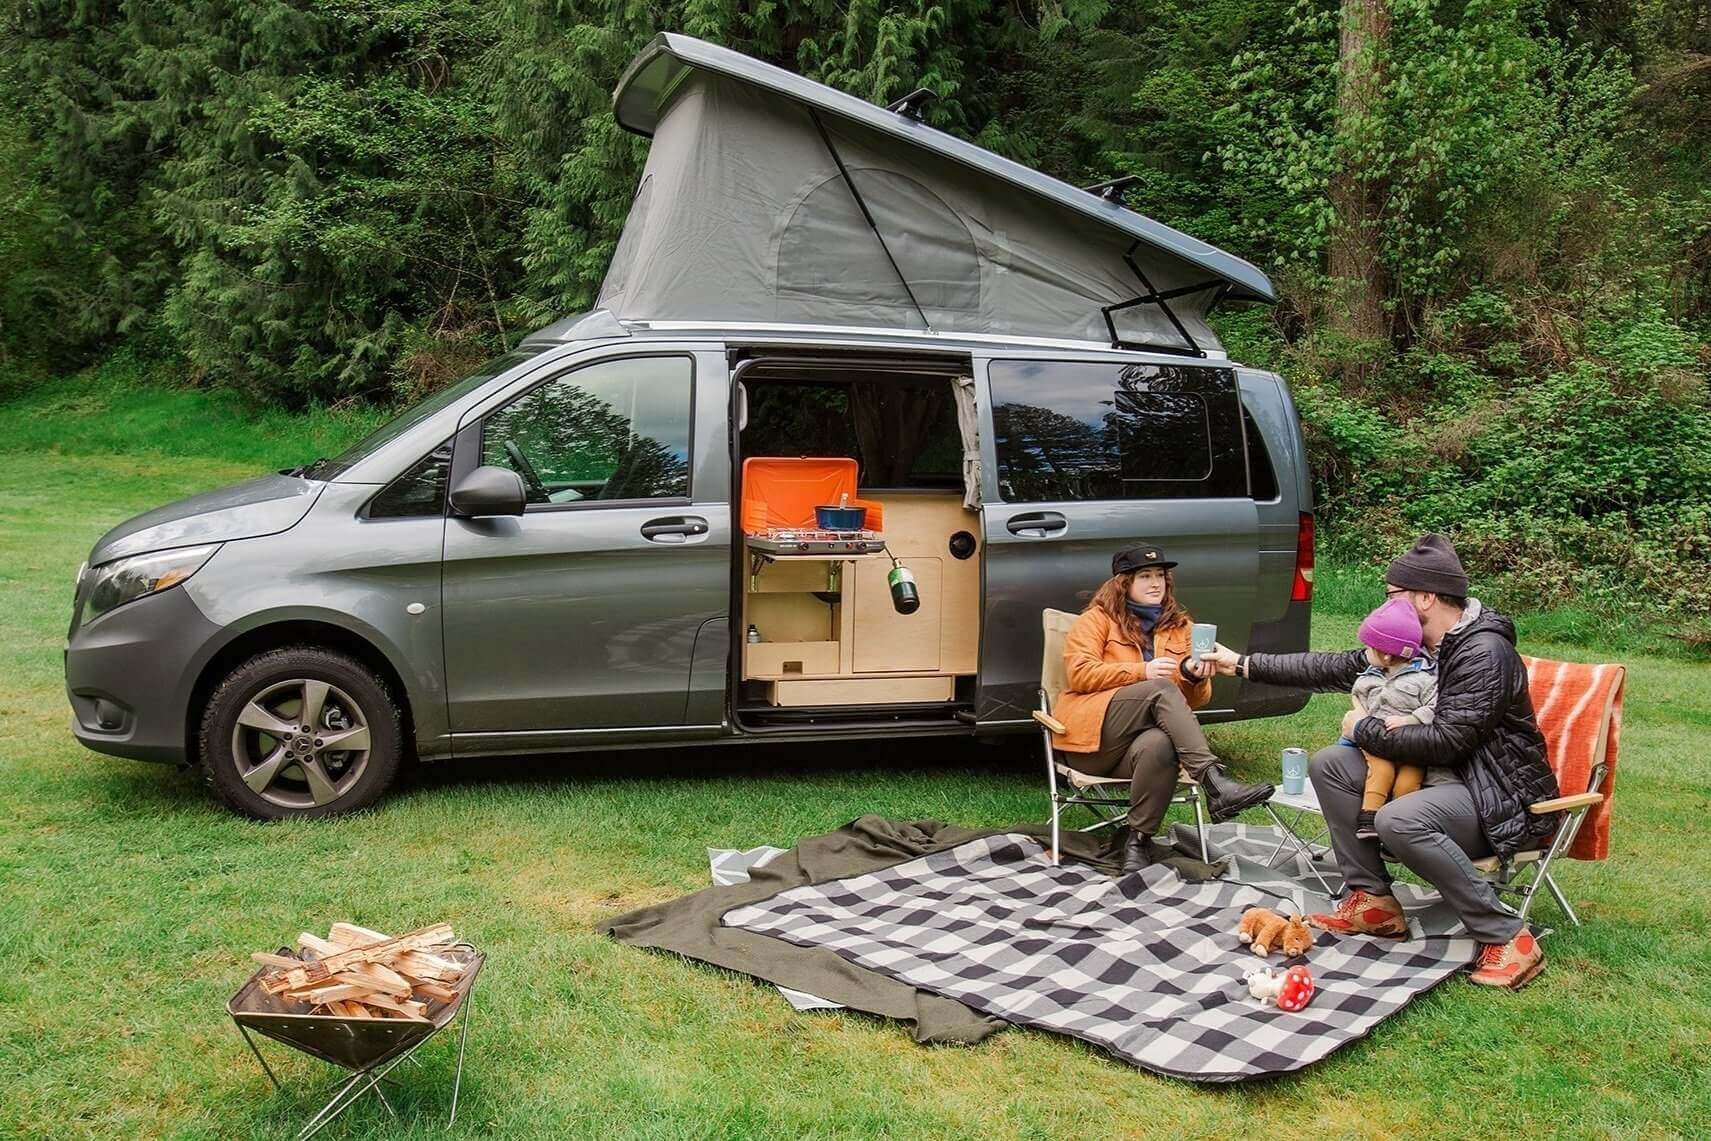 What is my custom built camper 2016 Metris worth?